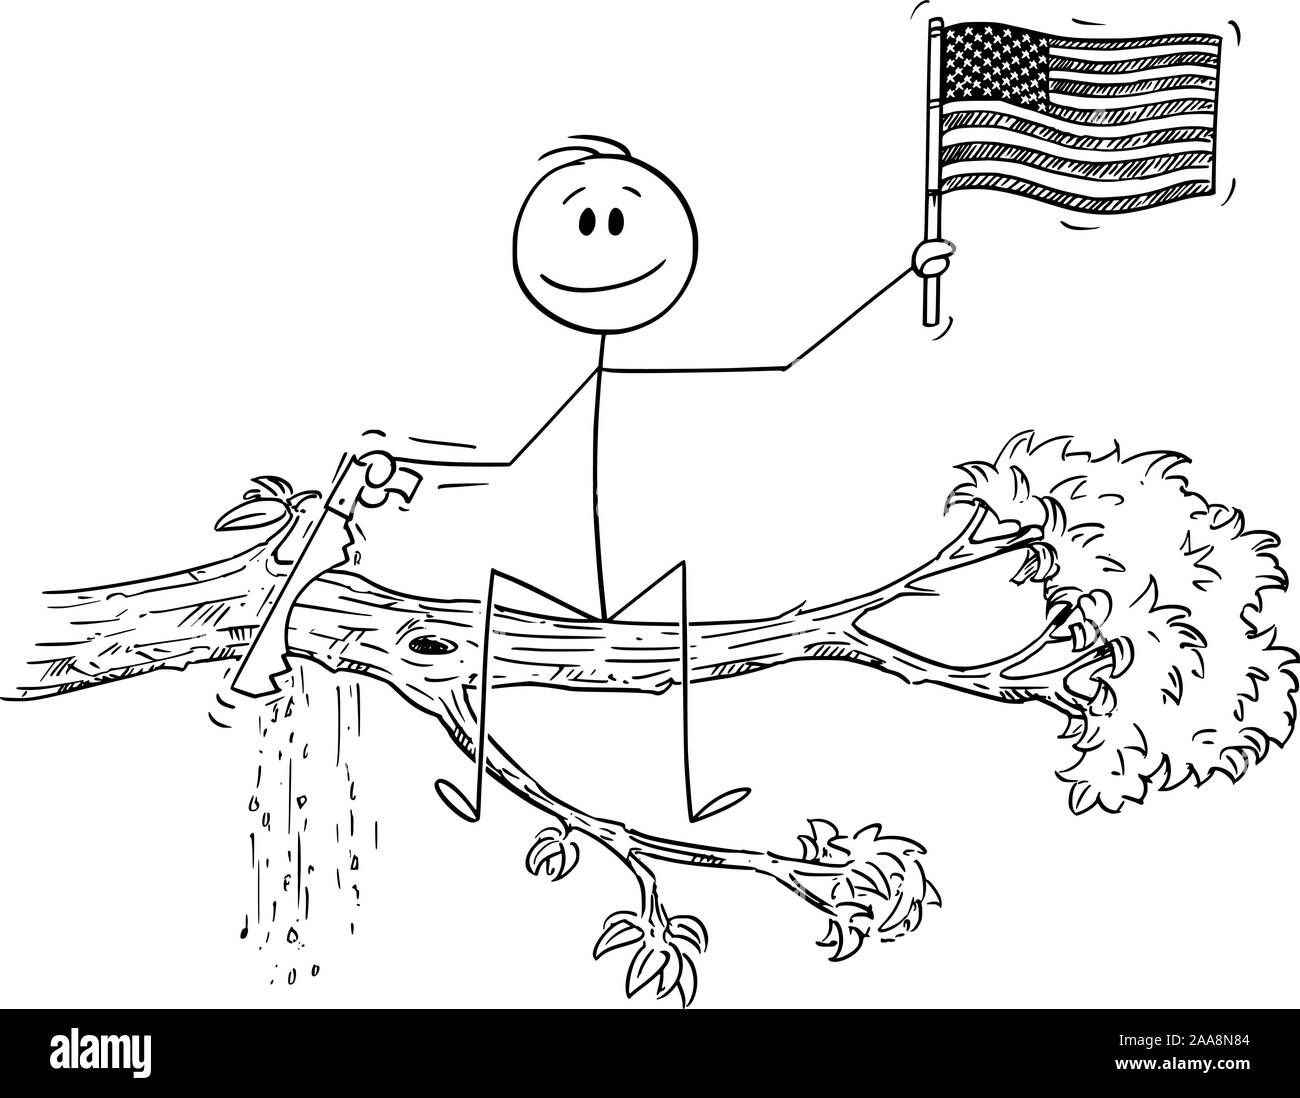 Vector cartoon stick figure dessin illustration conceptuelle de l'homme  agiter le drapeau des États-Unis d'Amérique ou des Etats-Unis, et avec  l'arbre de scie coupe branche sur laquelle il est assis Image Vectorielle